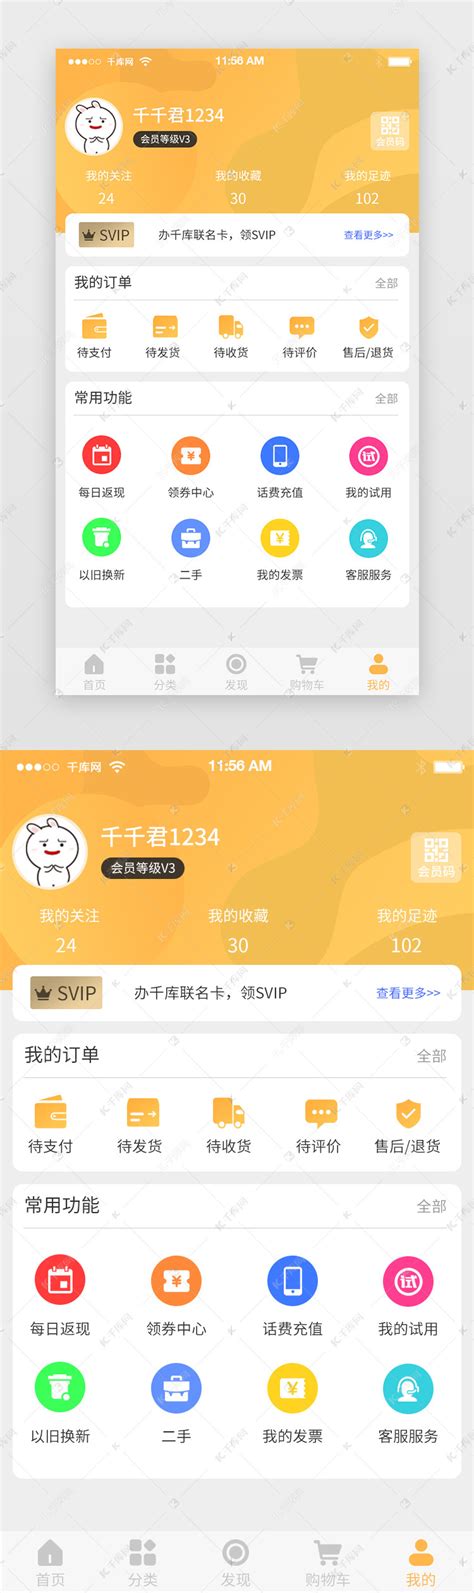 中文精美完整购物商城APP手机网站模板下载优惠商城 - IT书包